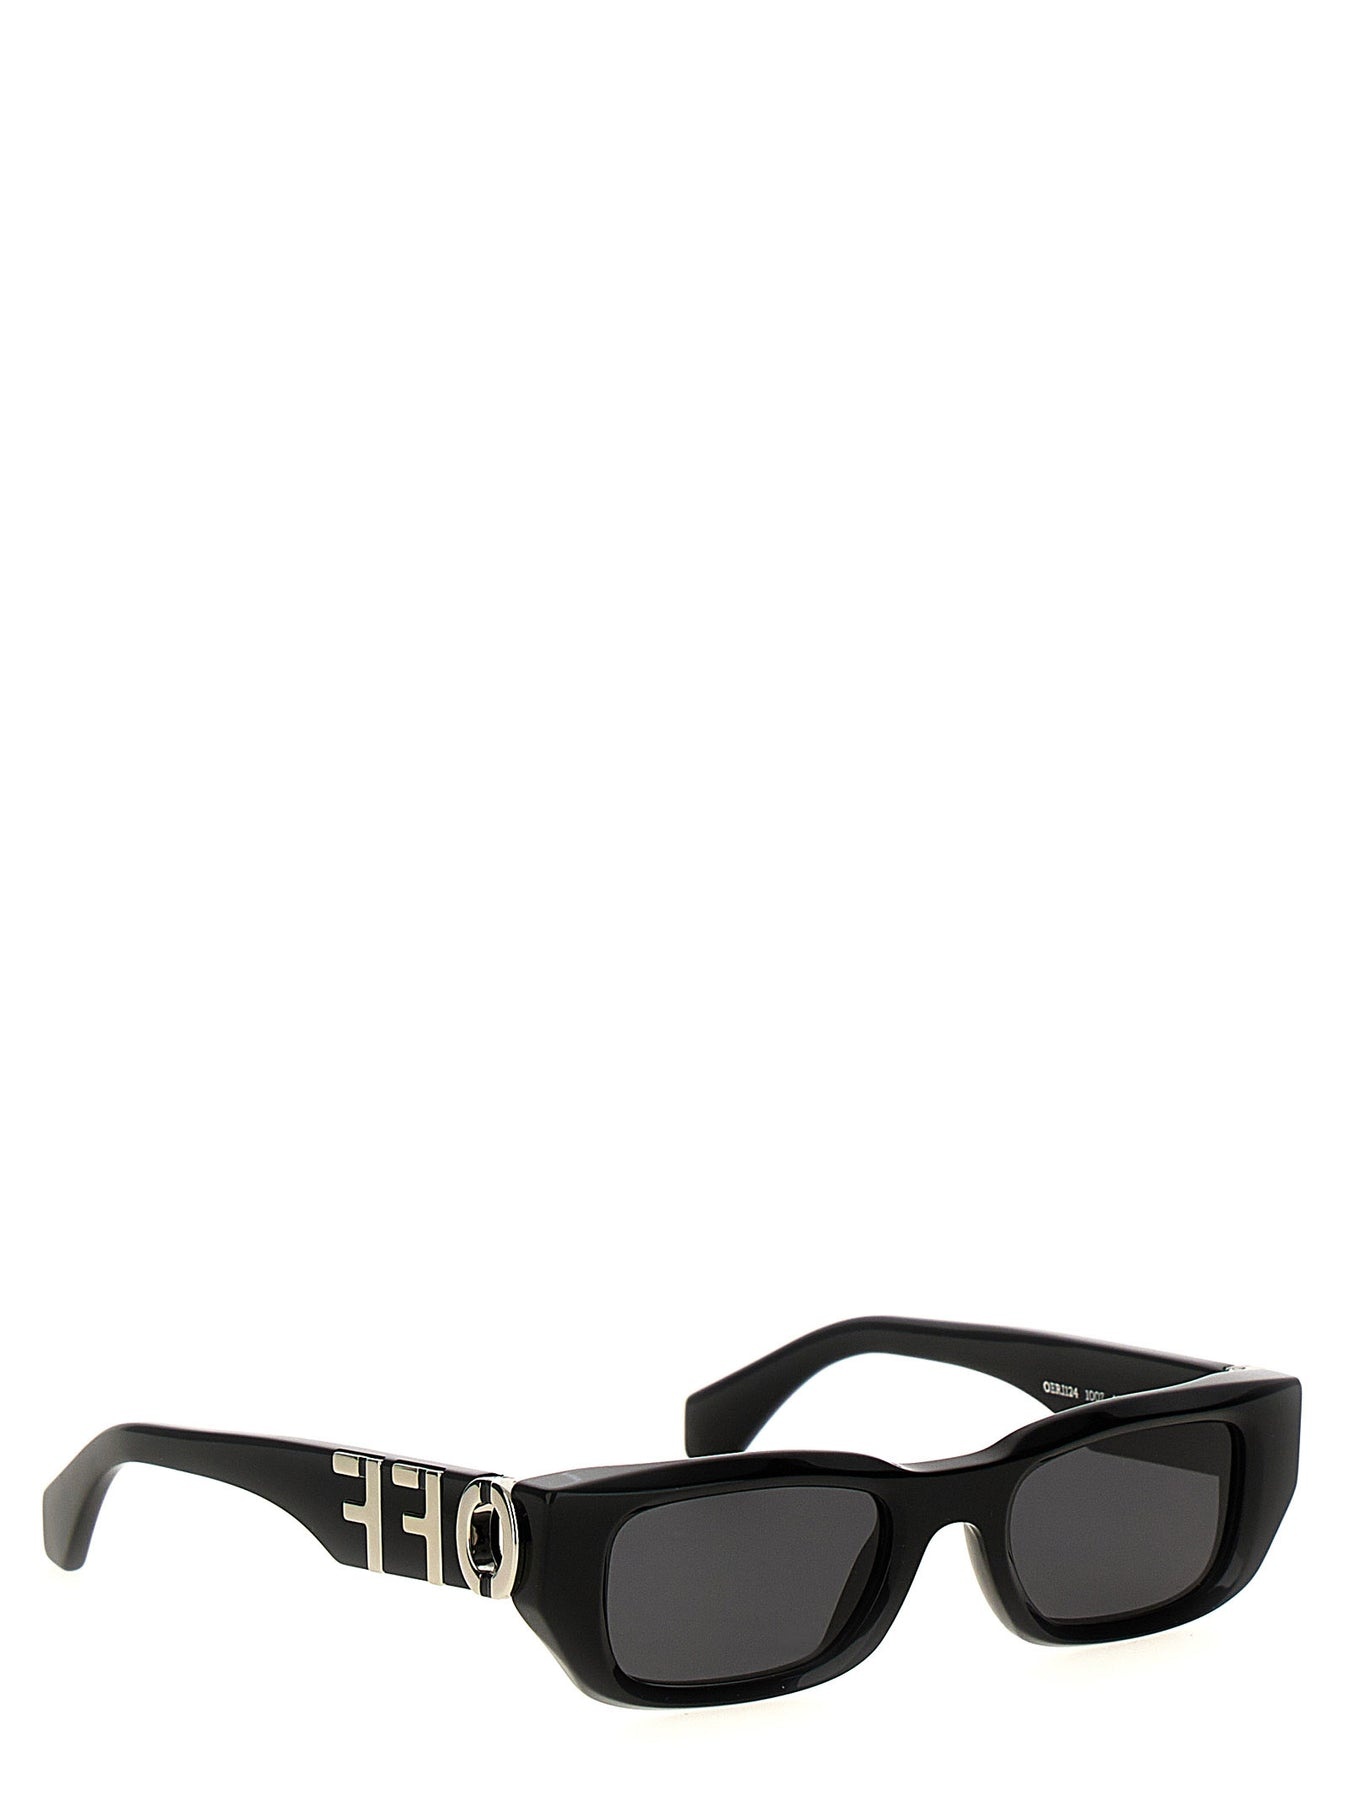 Fillmore Sunglasses Black - 2